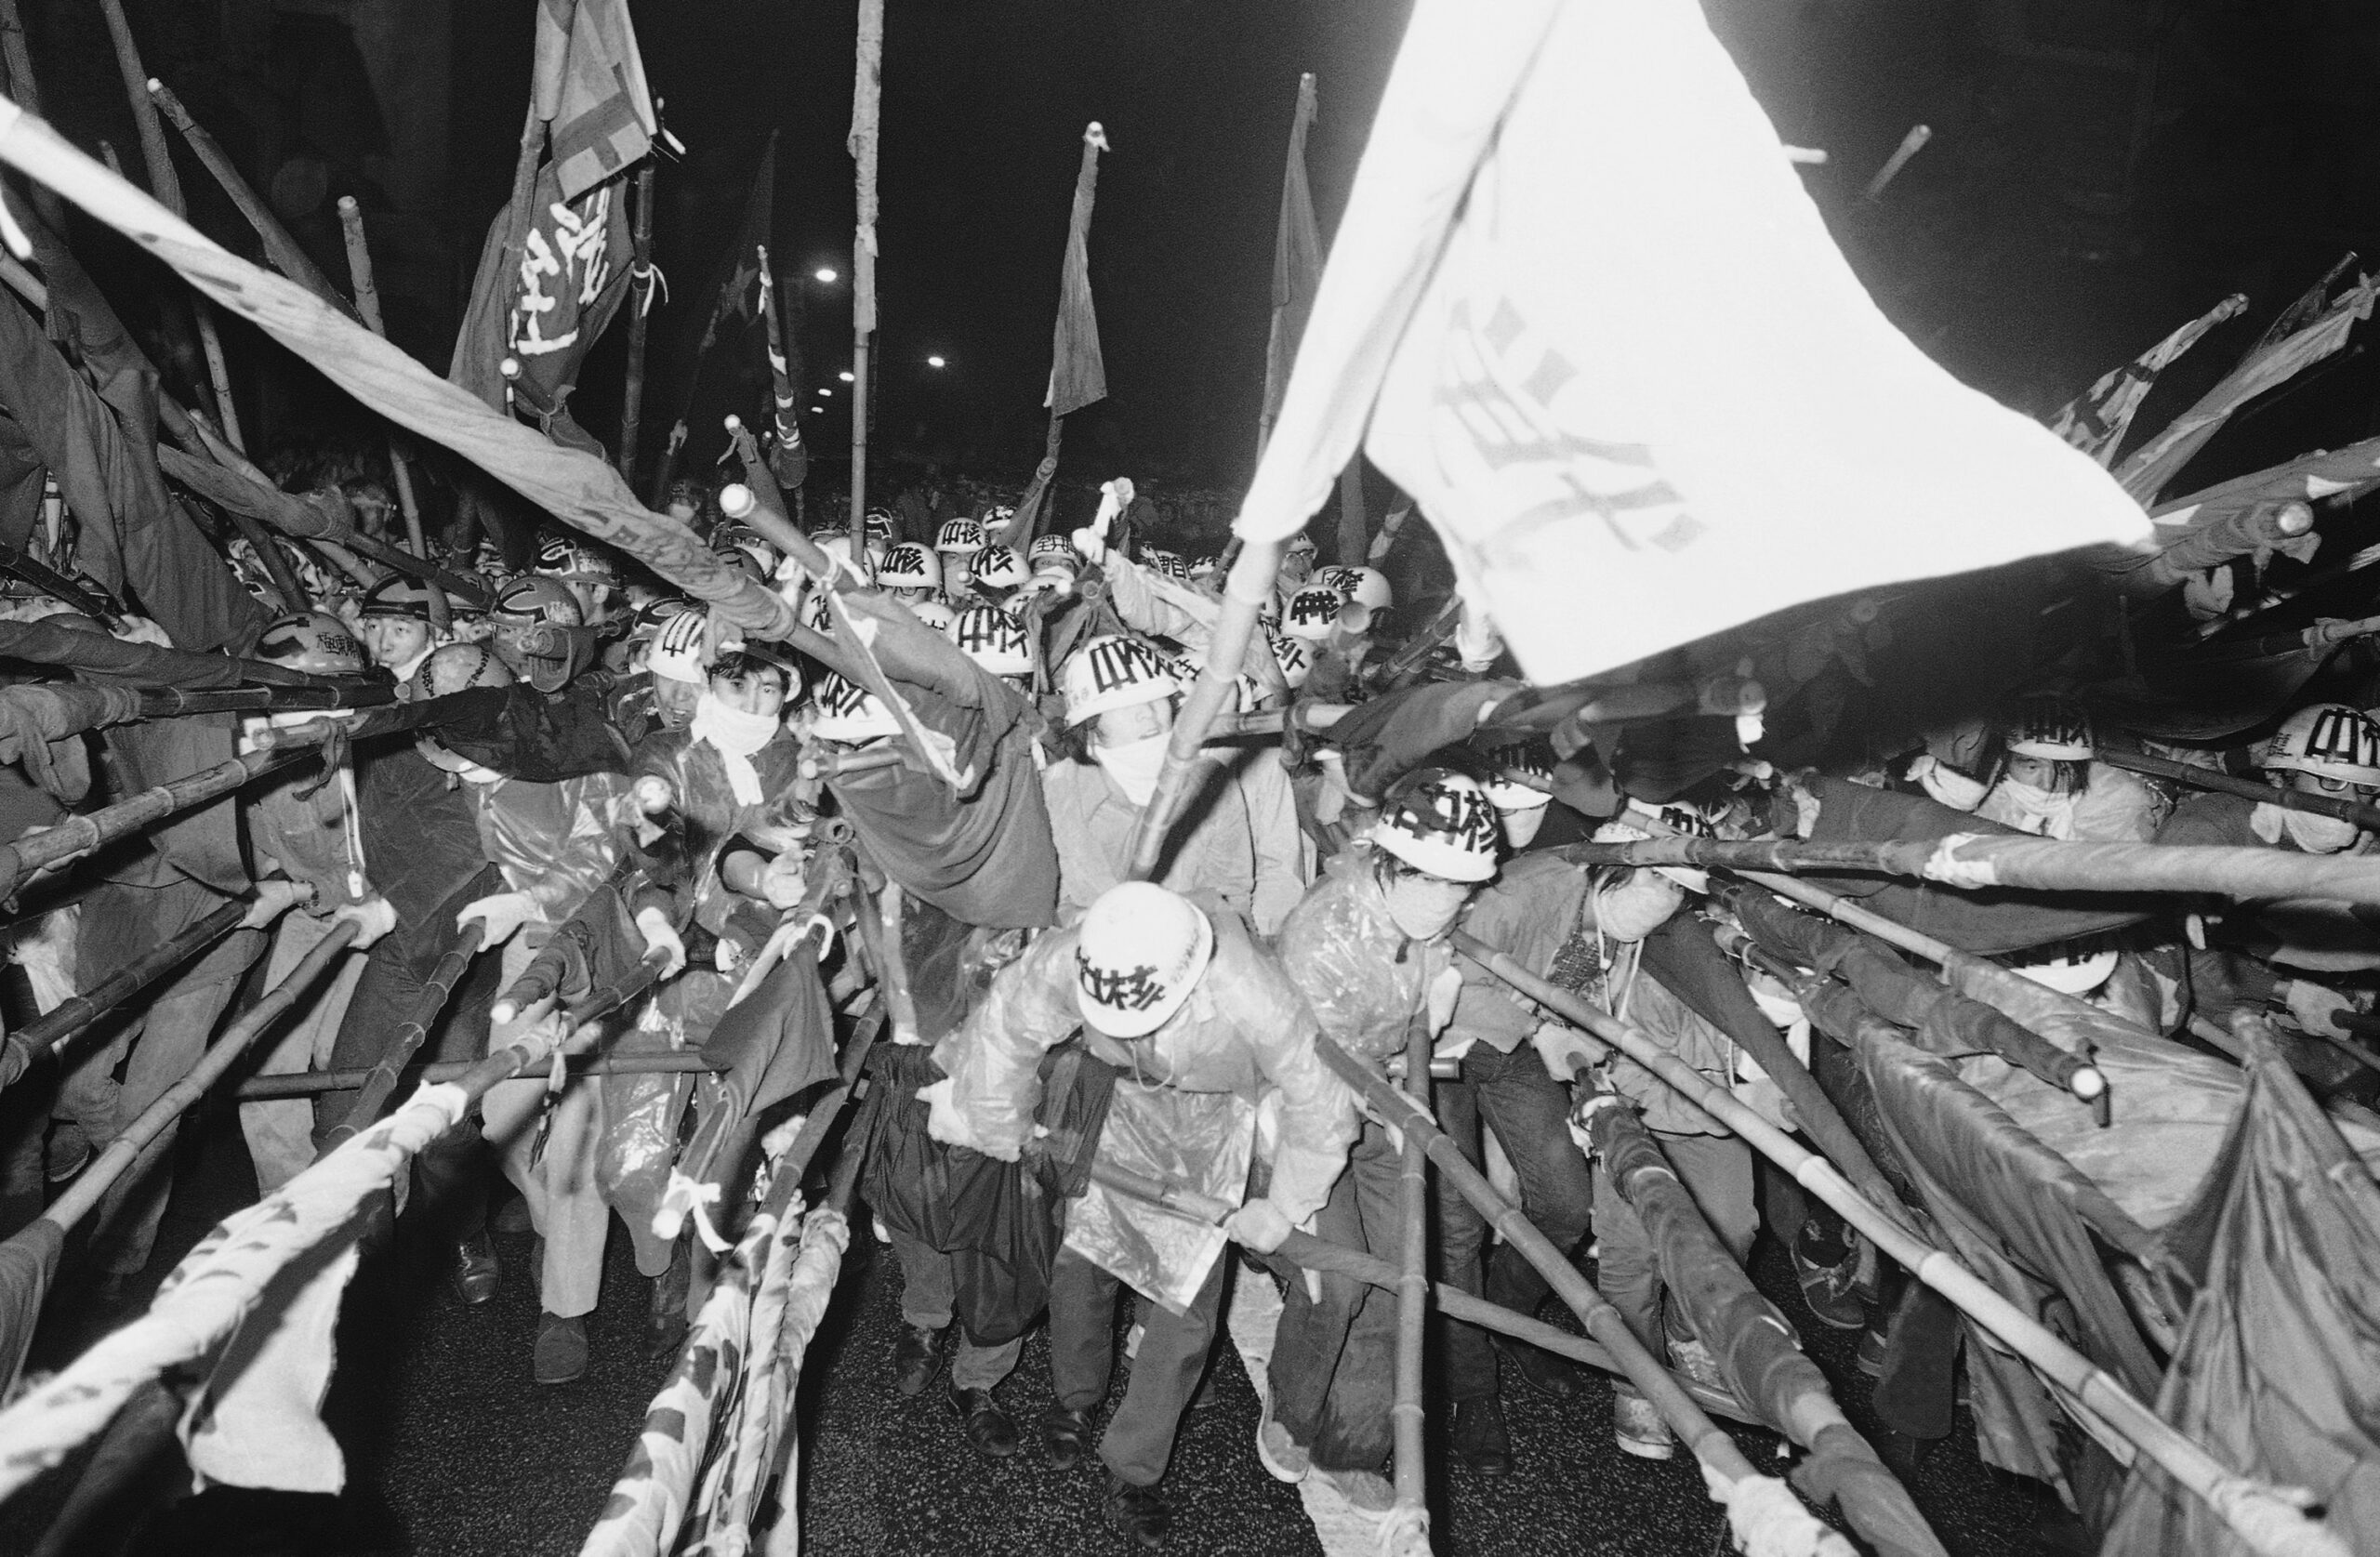 Οι εξτρεμιστικές ομάδες φοιτητών Zengakuren στη μεταπολεμική Ιαπωνία, ο αντιιμπεριαλισμός τους και οι εσωτερικές τους διαφωνίες [...]